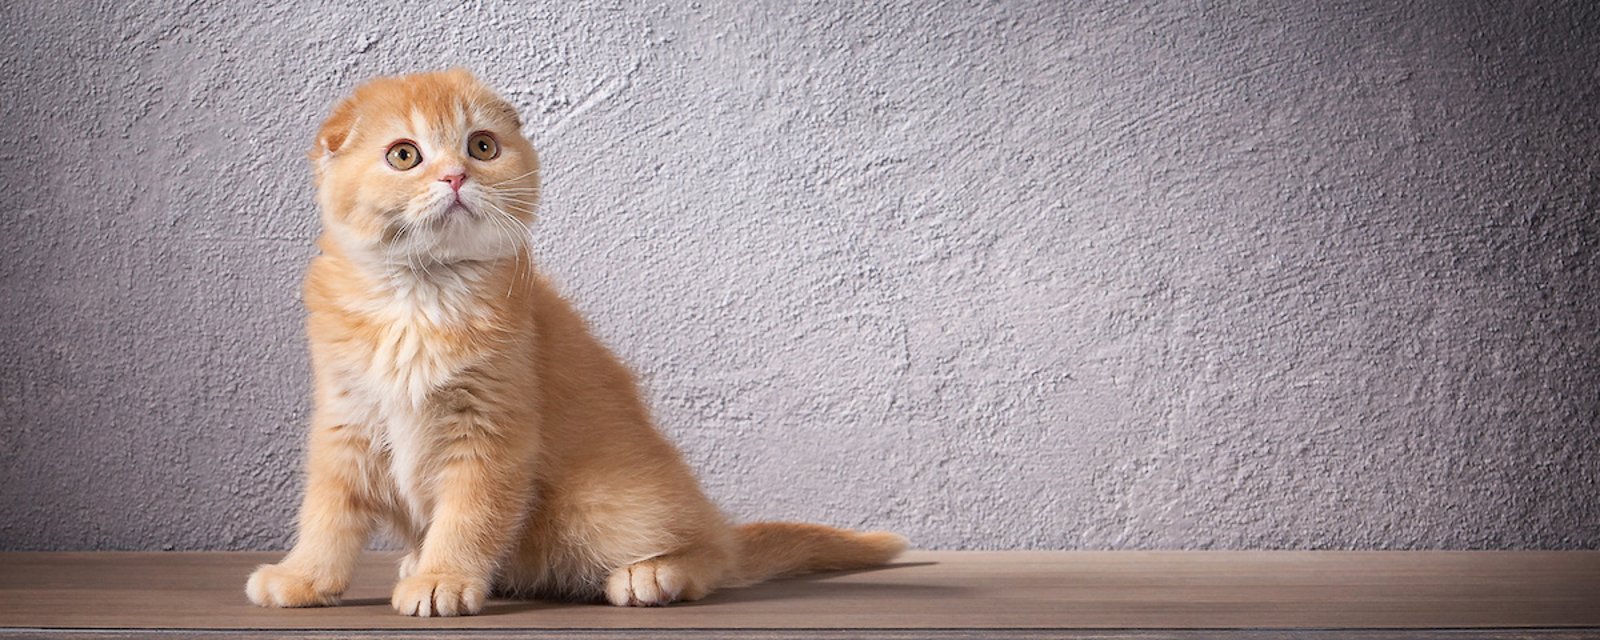 Une vétérinaire dénonce l’utilisation de certains chats dans des photos et vidéos publicitaires